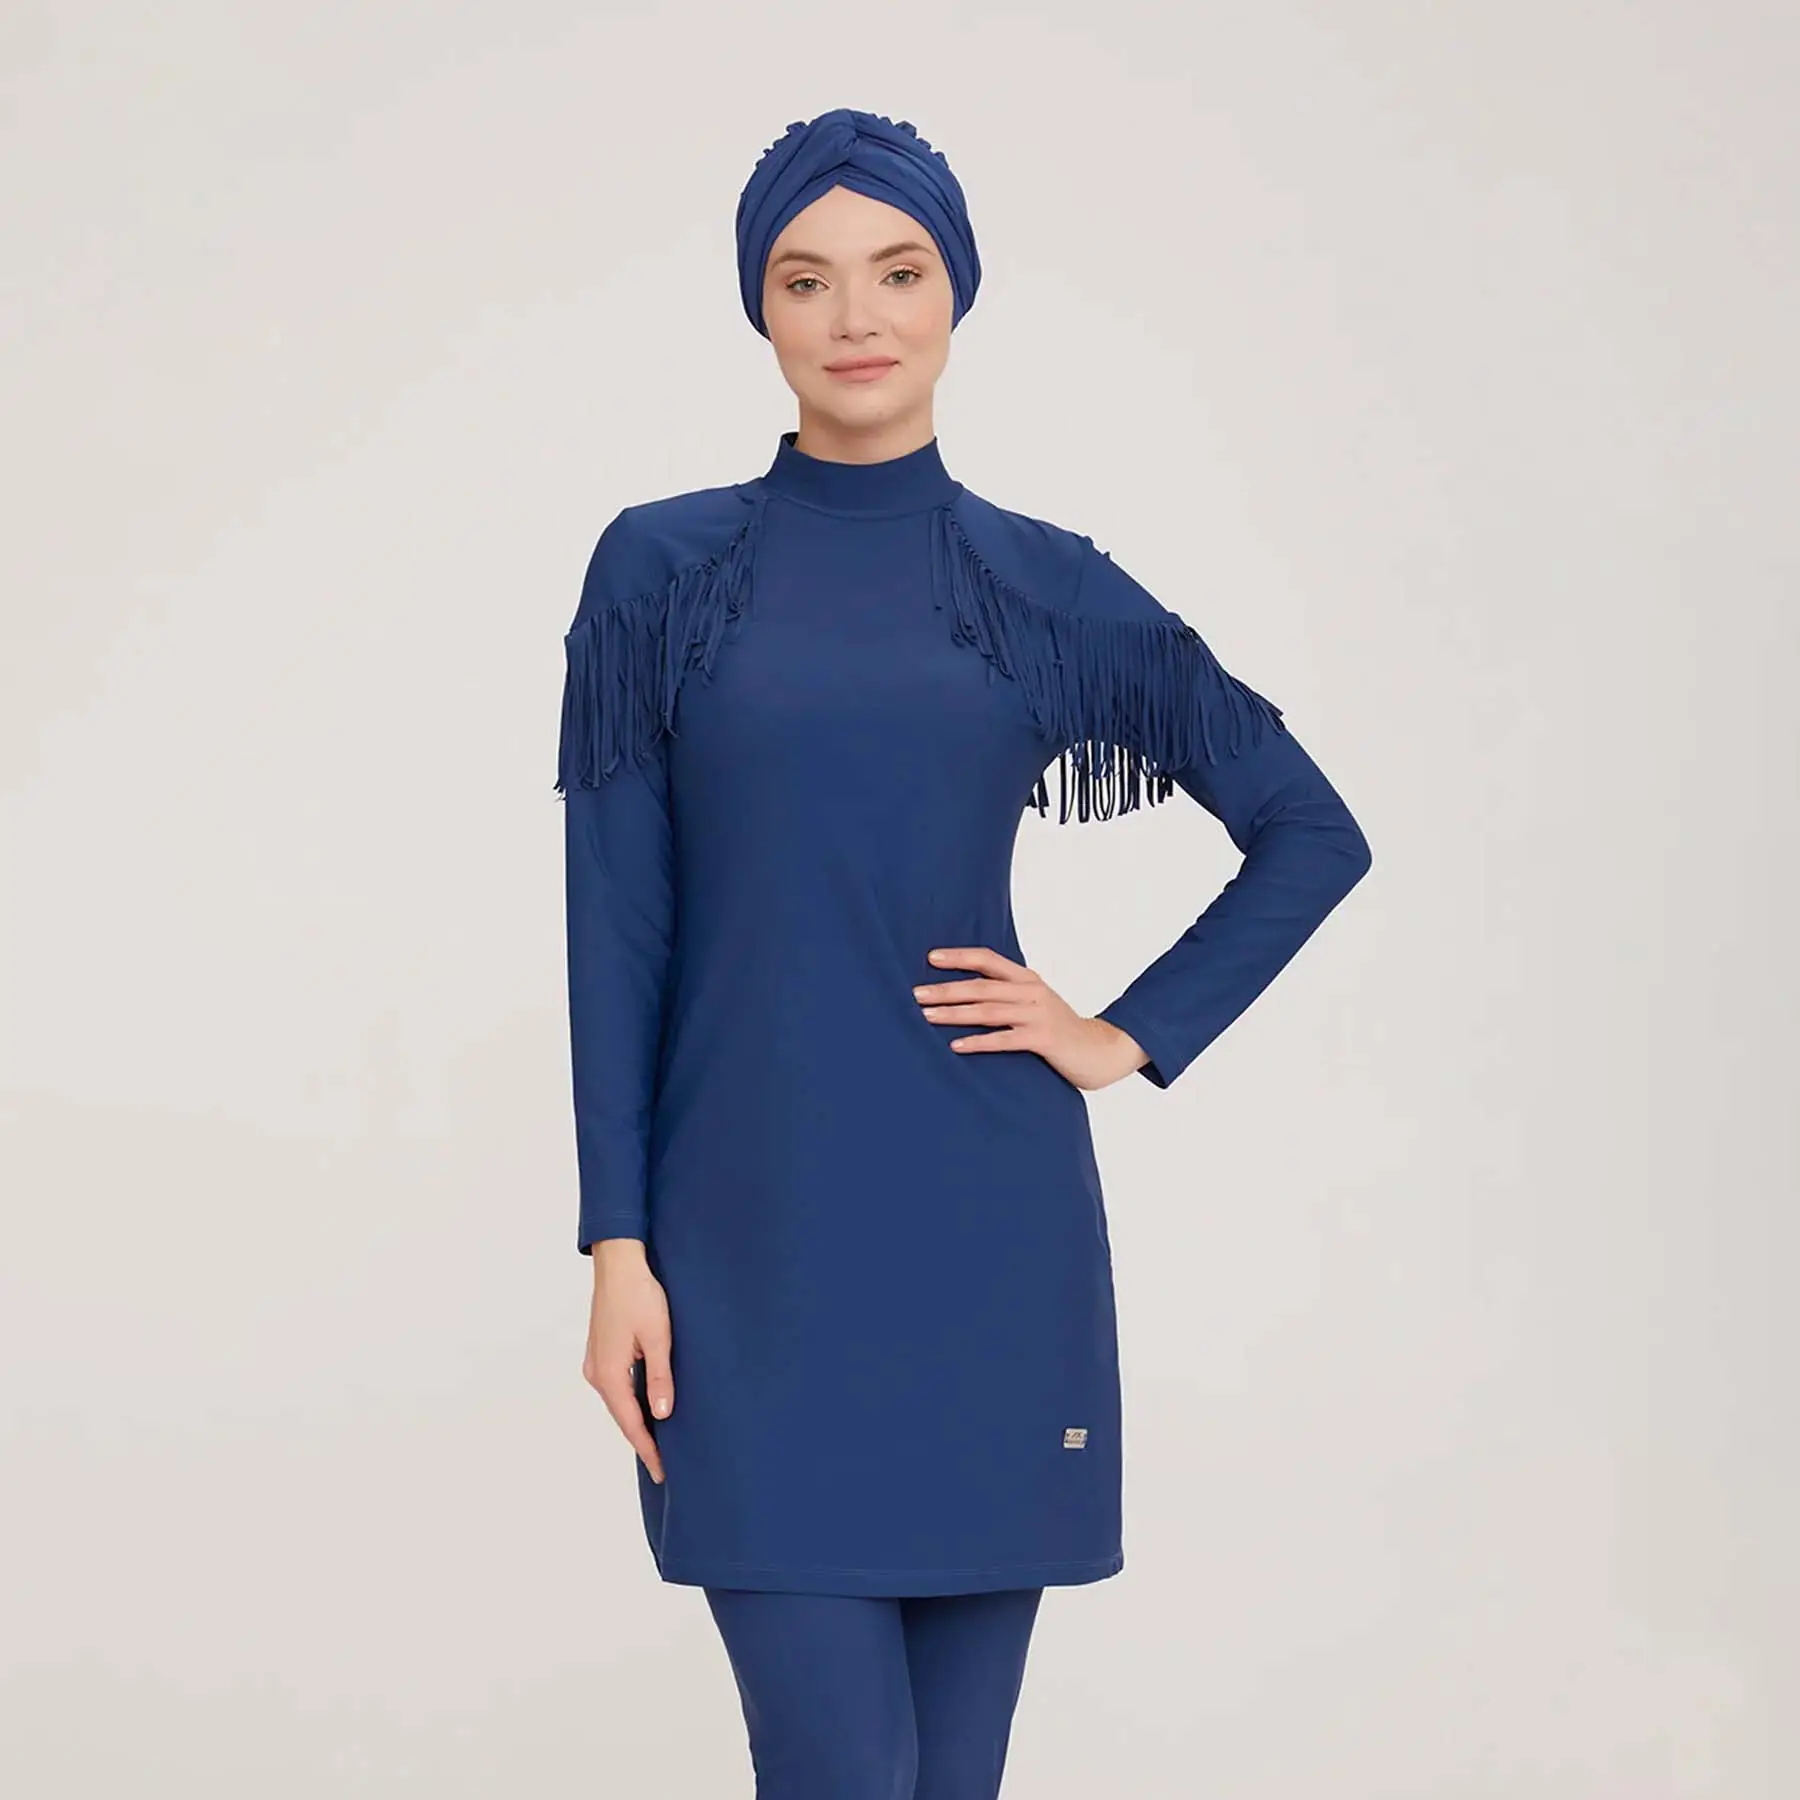 Aschulman 2023 vendita calda ragazza personalizzata manica lunga Casual pianura blu Navy Burkini costumi da bagno musulmani donne